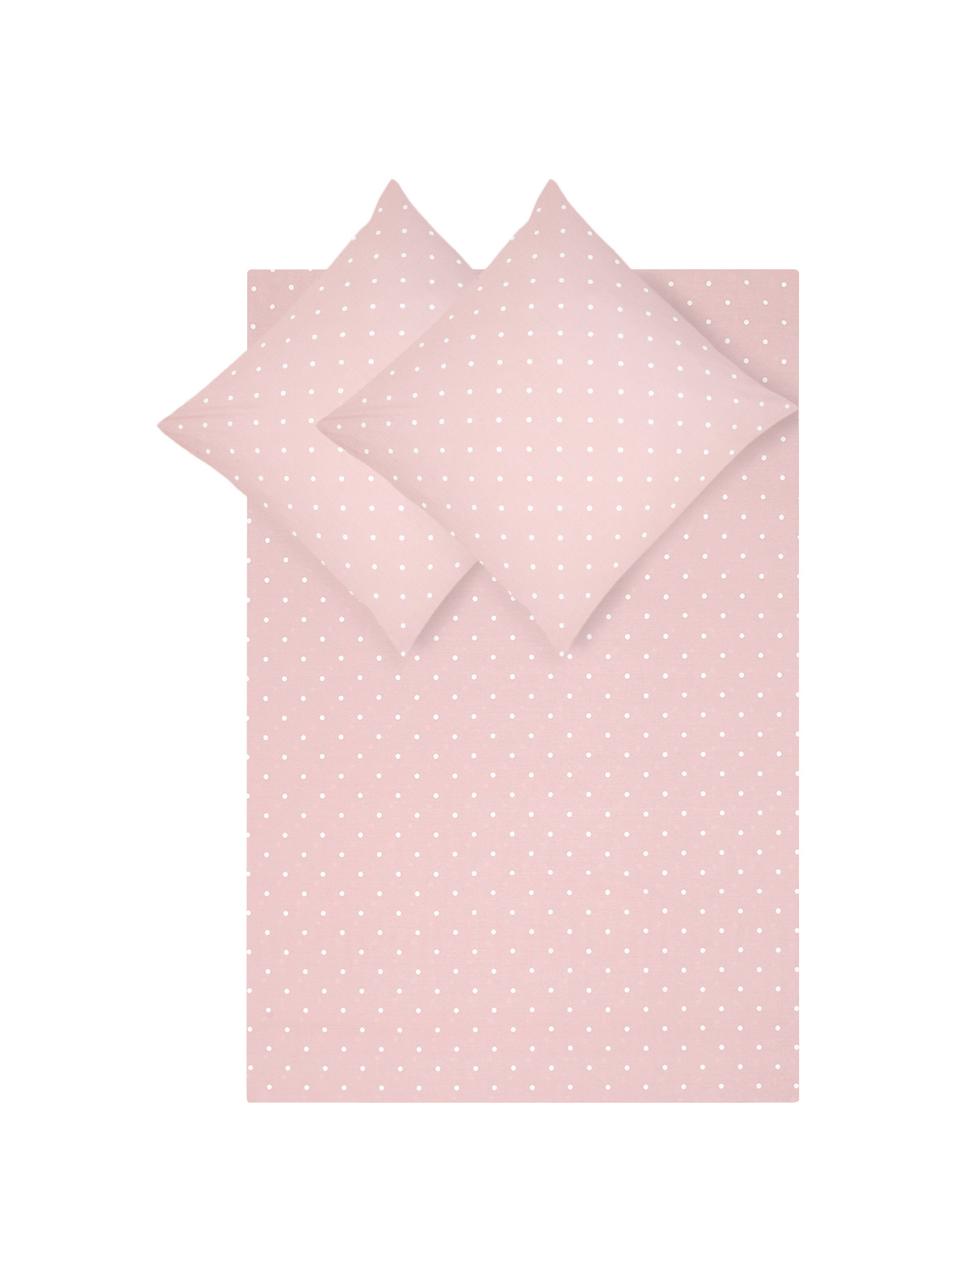 Gepunktete Baumwoll-Bettwäsche Dotty in Rosa/Weiß, Webart: Renforcé Fadendichte 144 , Rosa, Weiß, 240 x 220 cm + 2 Kissen 80 x 80 cm